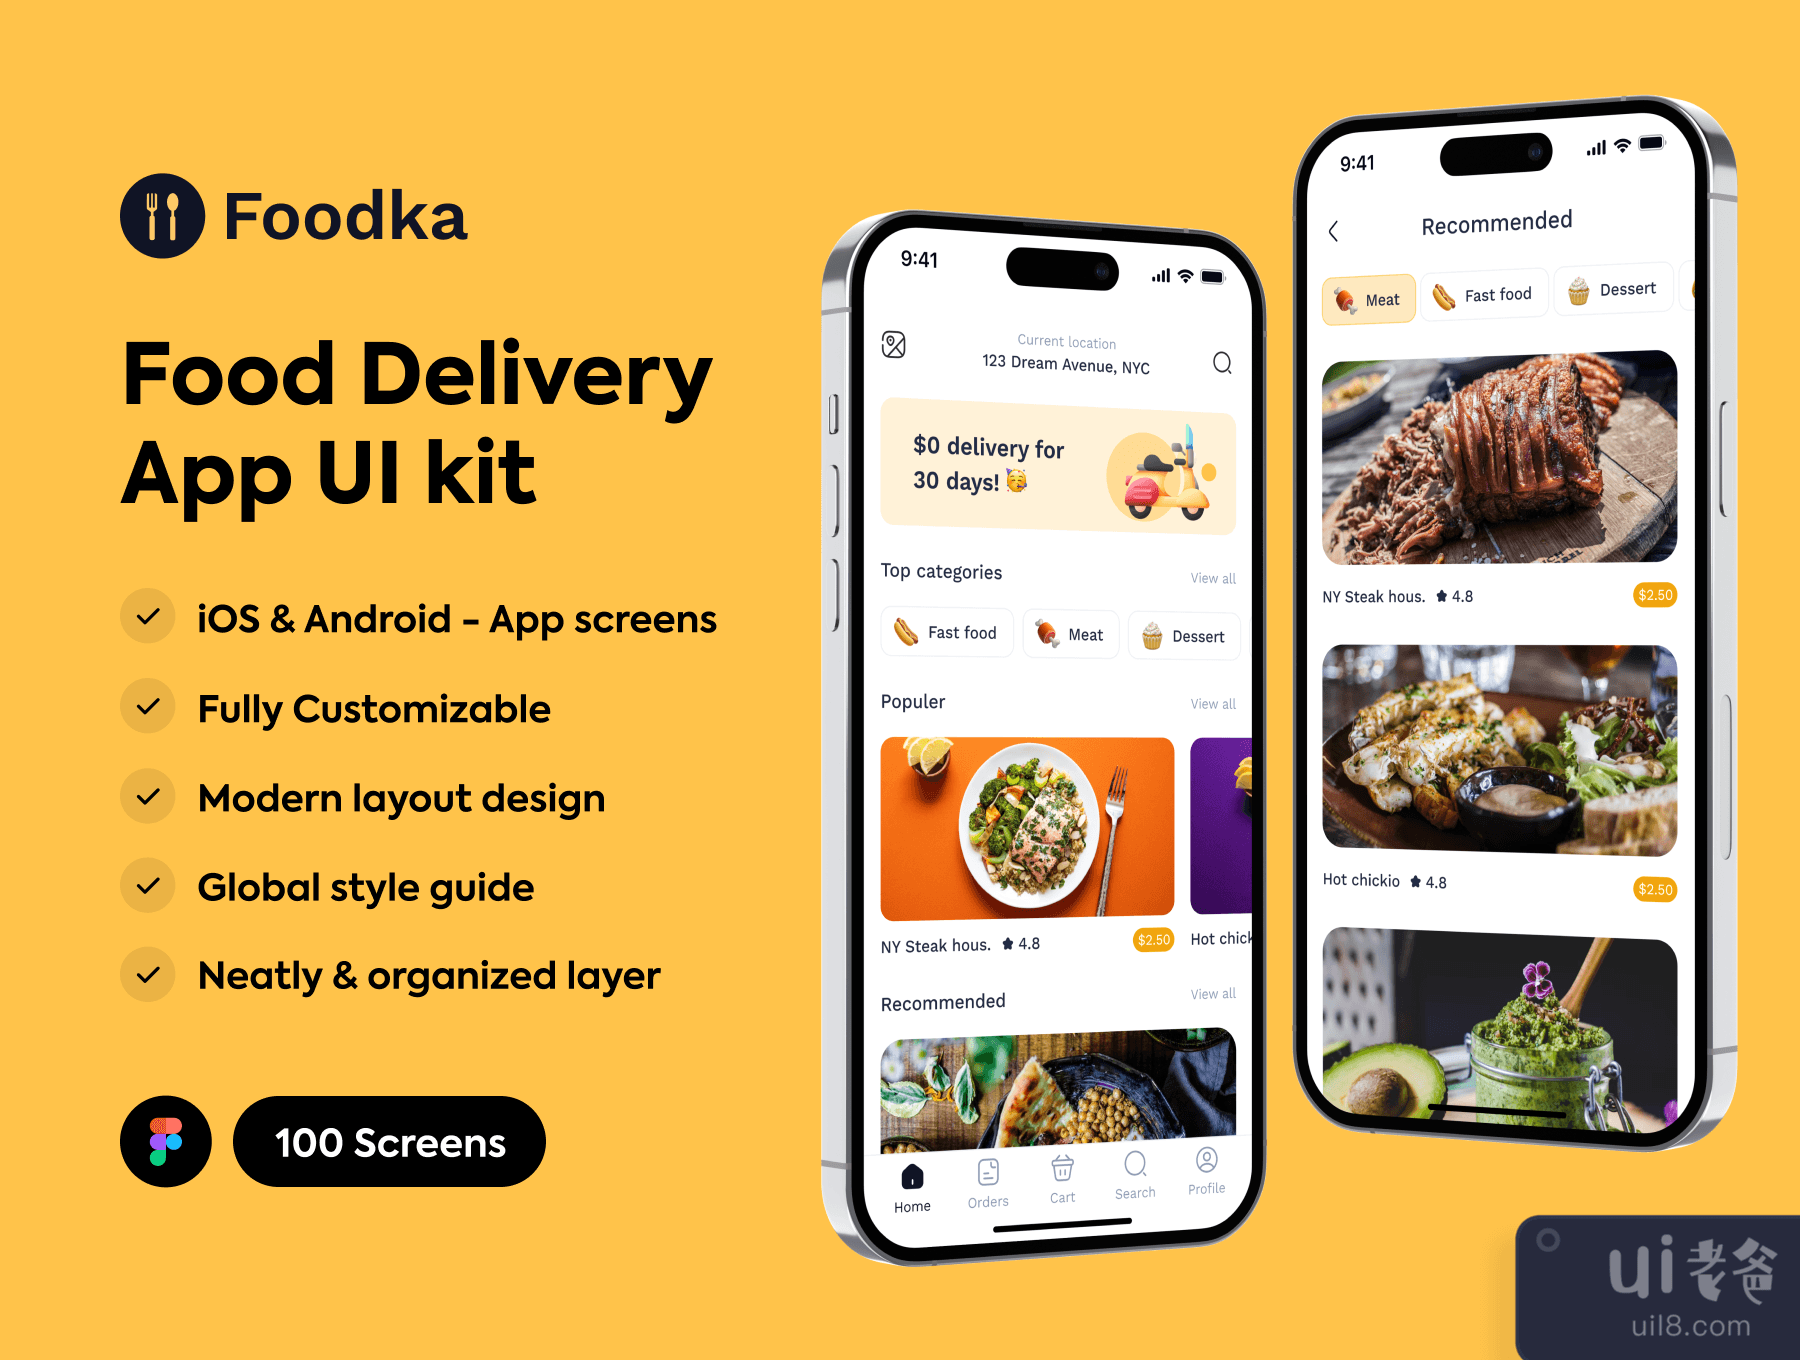 Foodka - 食品递送应用UI工具包 (Foodka - Food Delivery App UI kit)插图